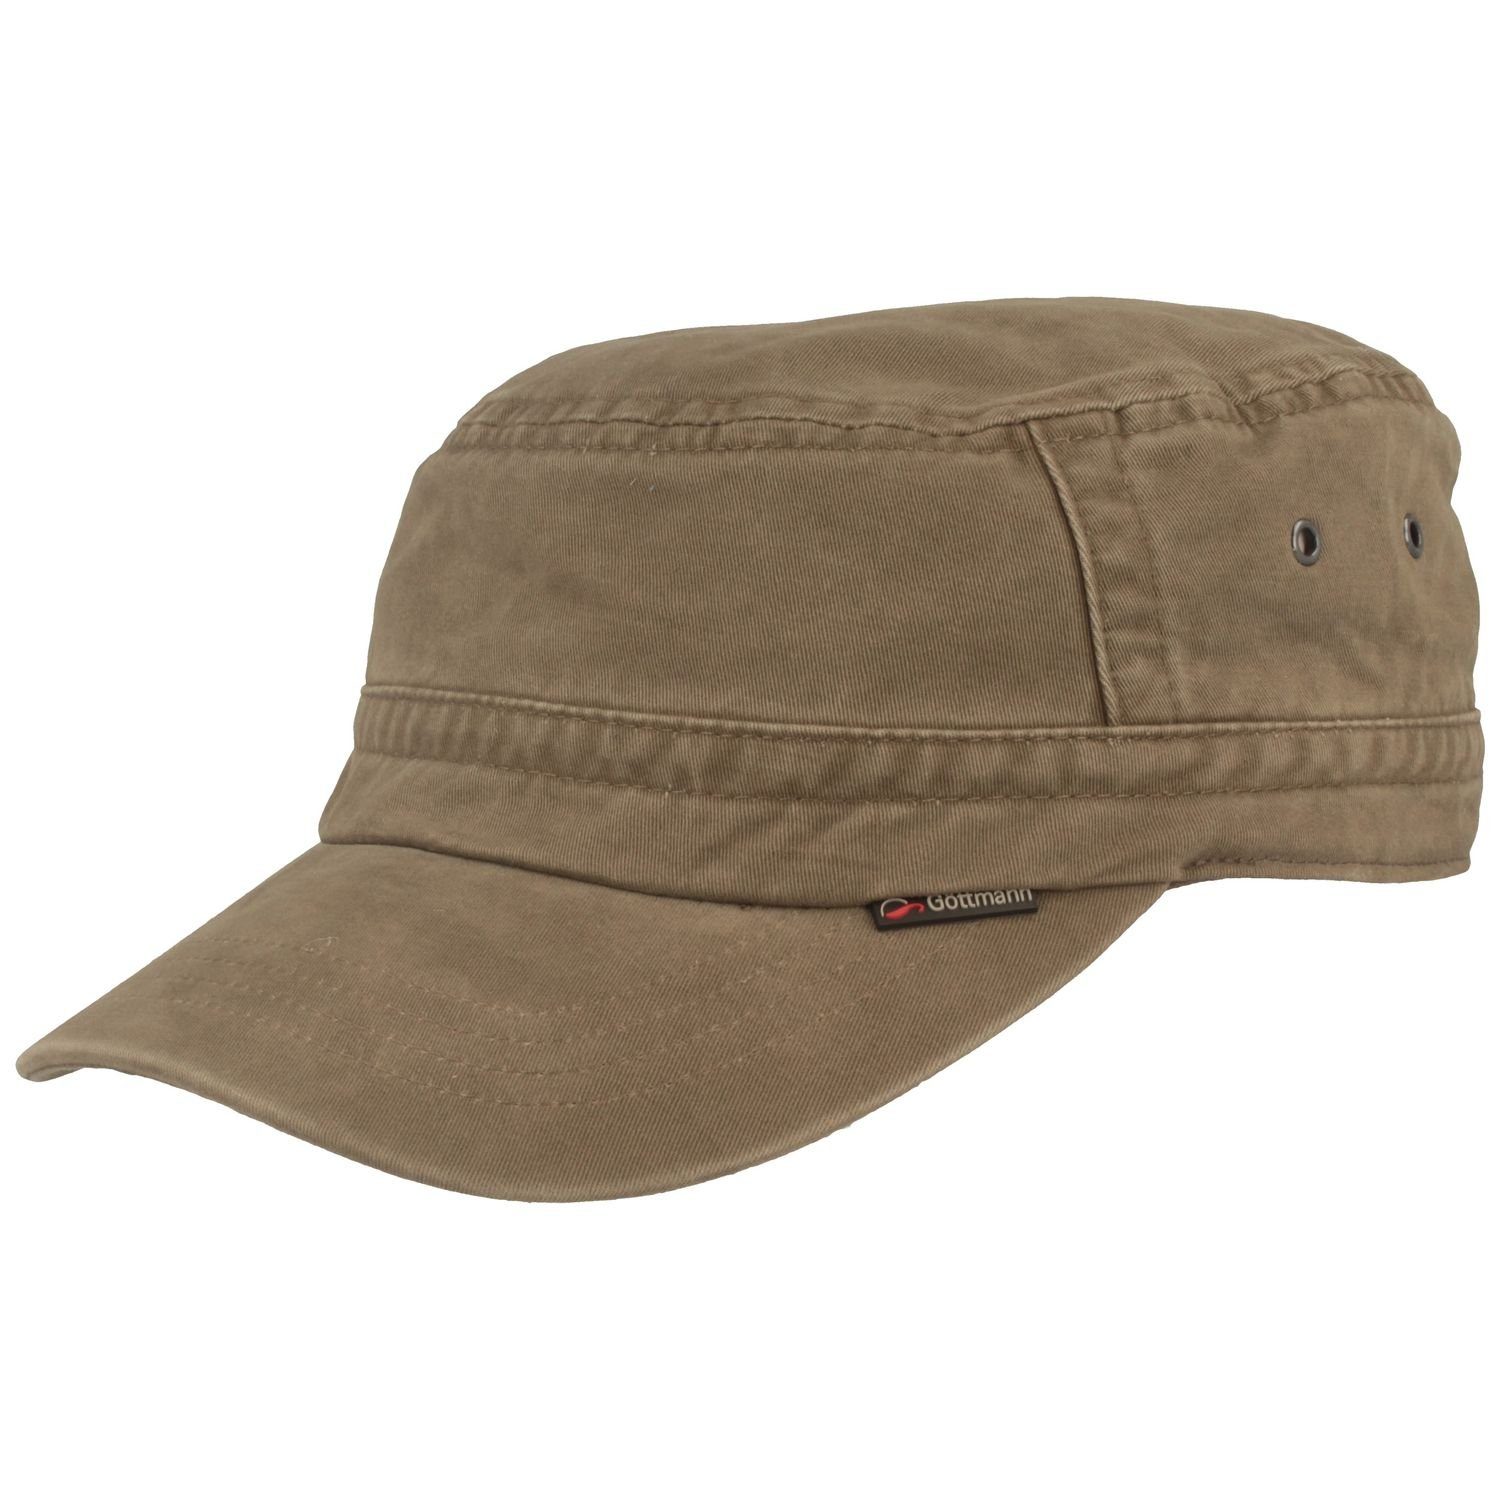 Göttmann Army Cap Army Cap mit UV-Schutz aus Baumwolle